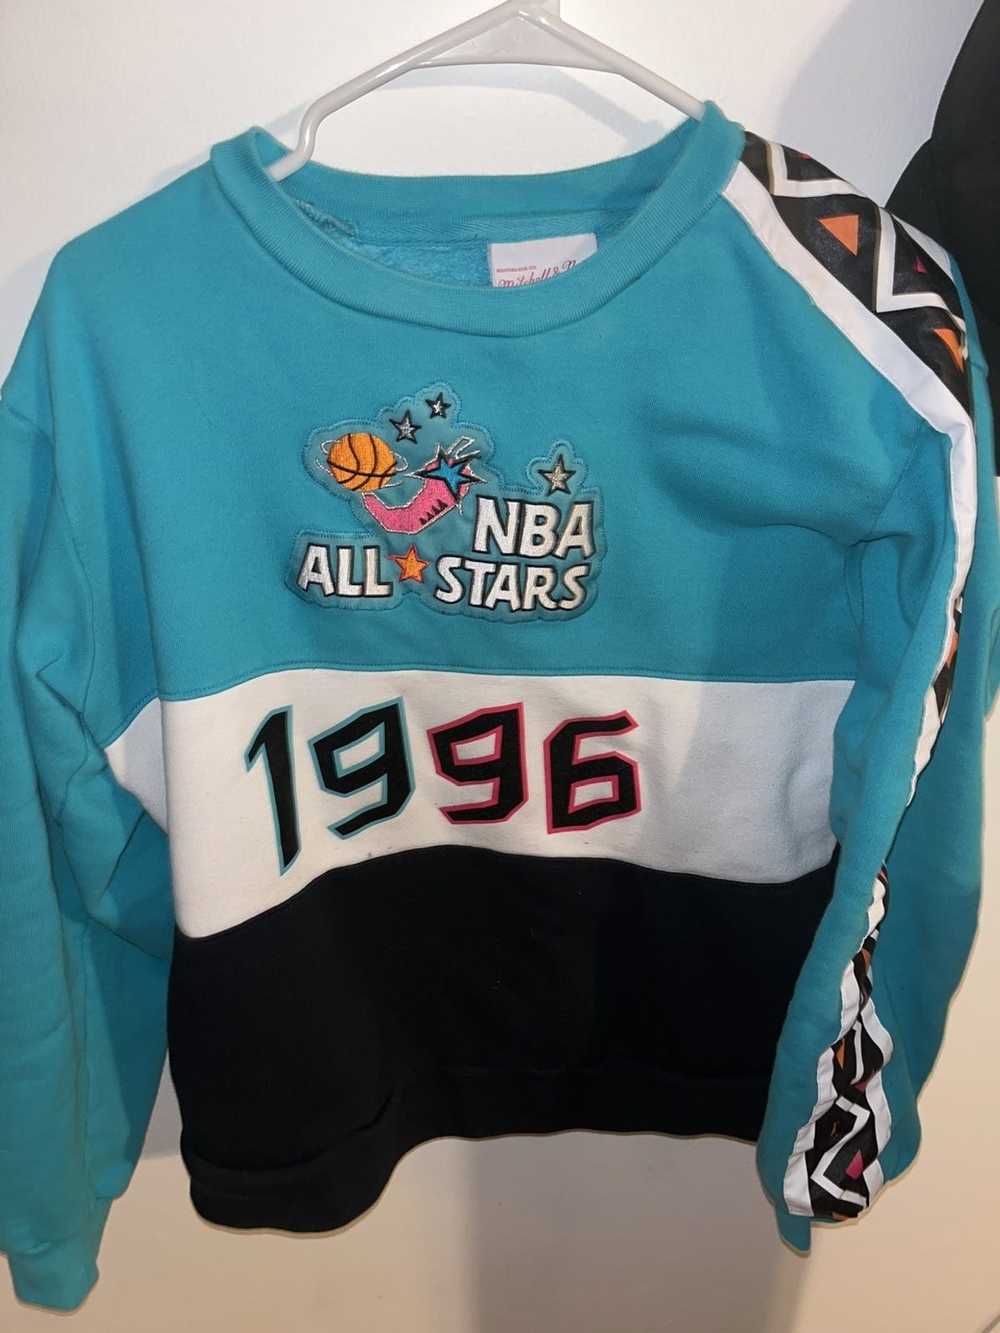 1996 NBA All Star Weekend Champion Jersey 🏆 23 x 33 - Depop